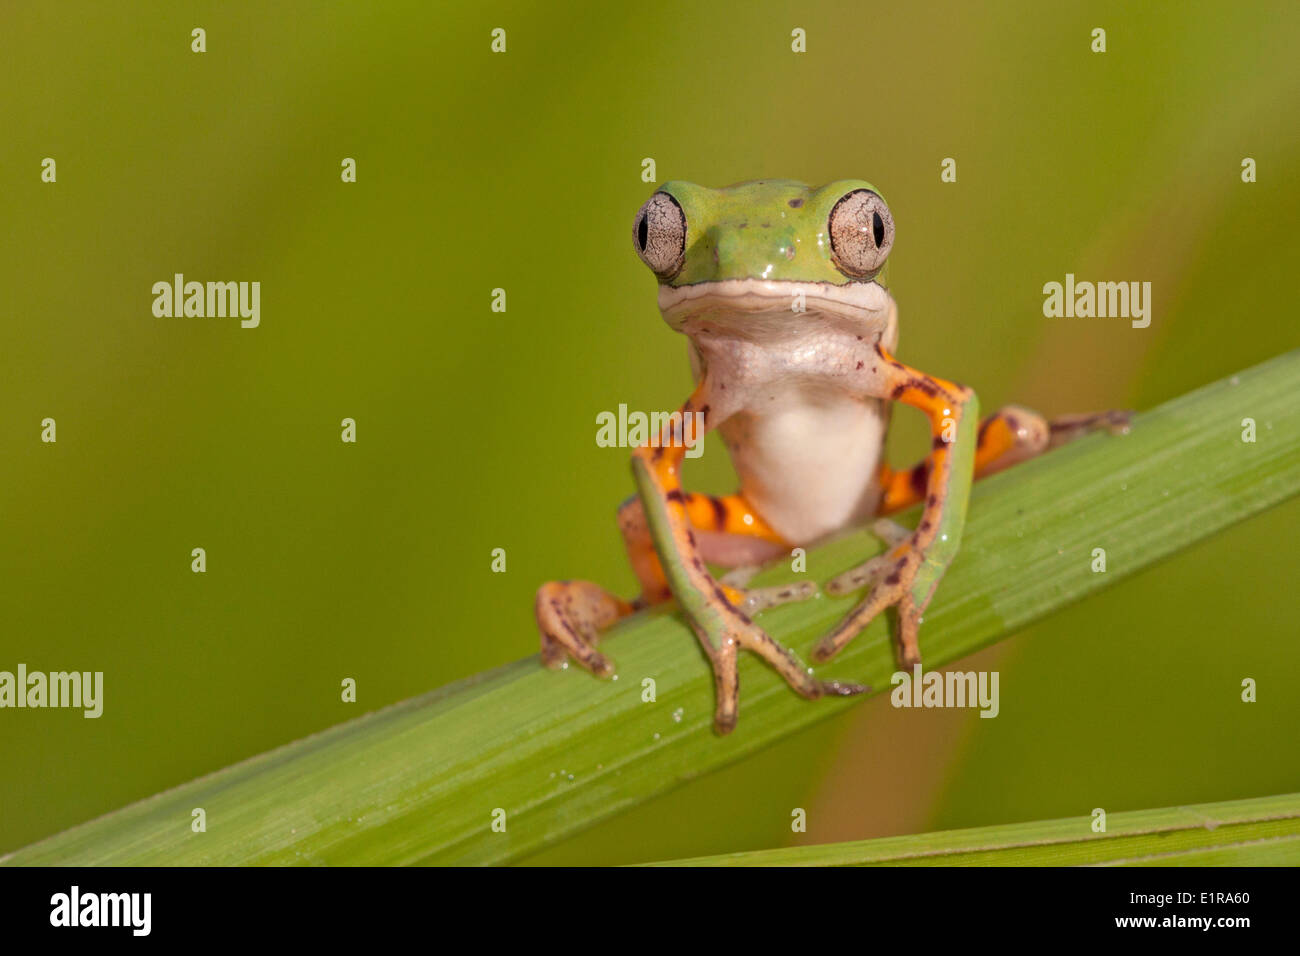 Photo d'une grenouille à pattes orange assis sur le dessus des feuilles de roseau Banque D'Images